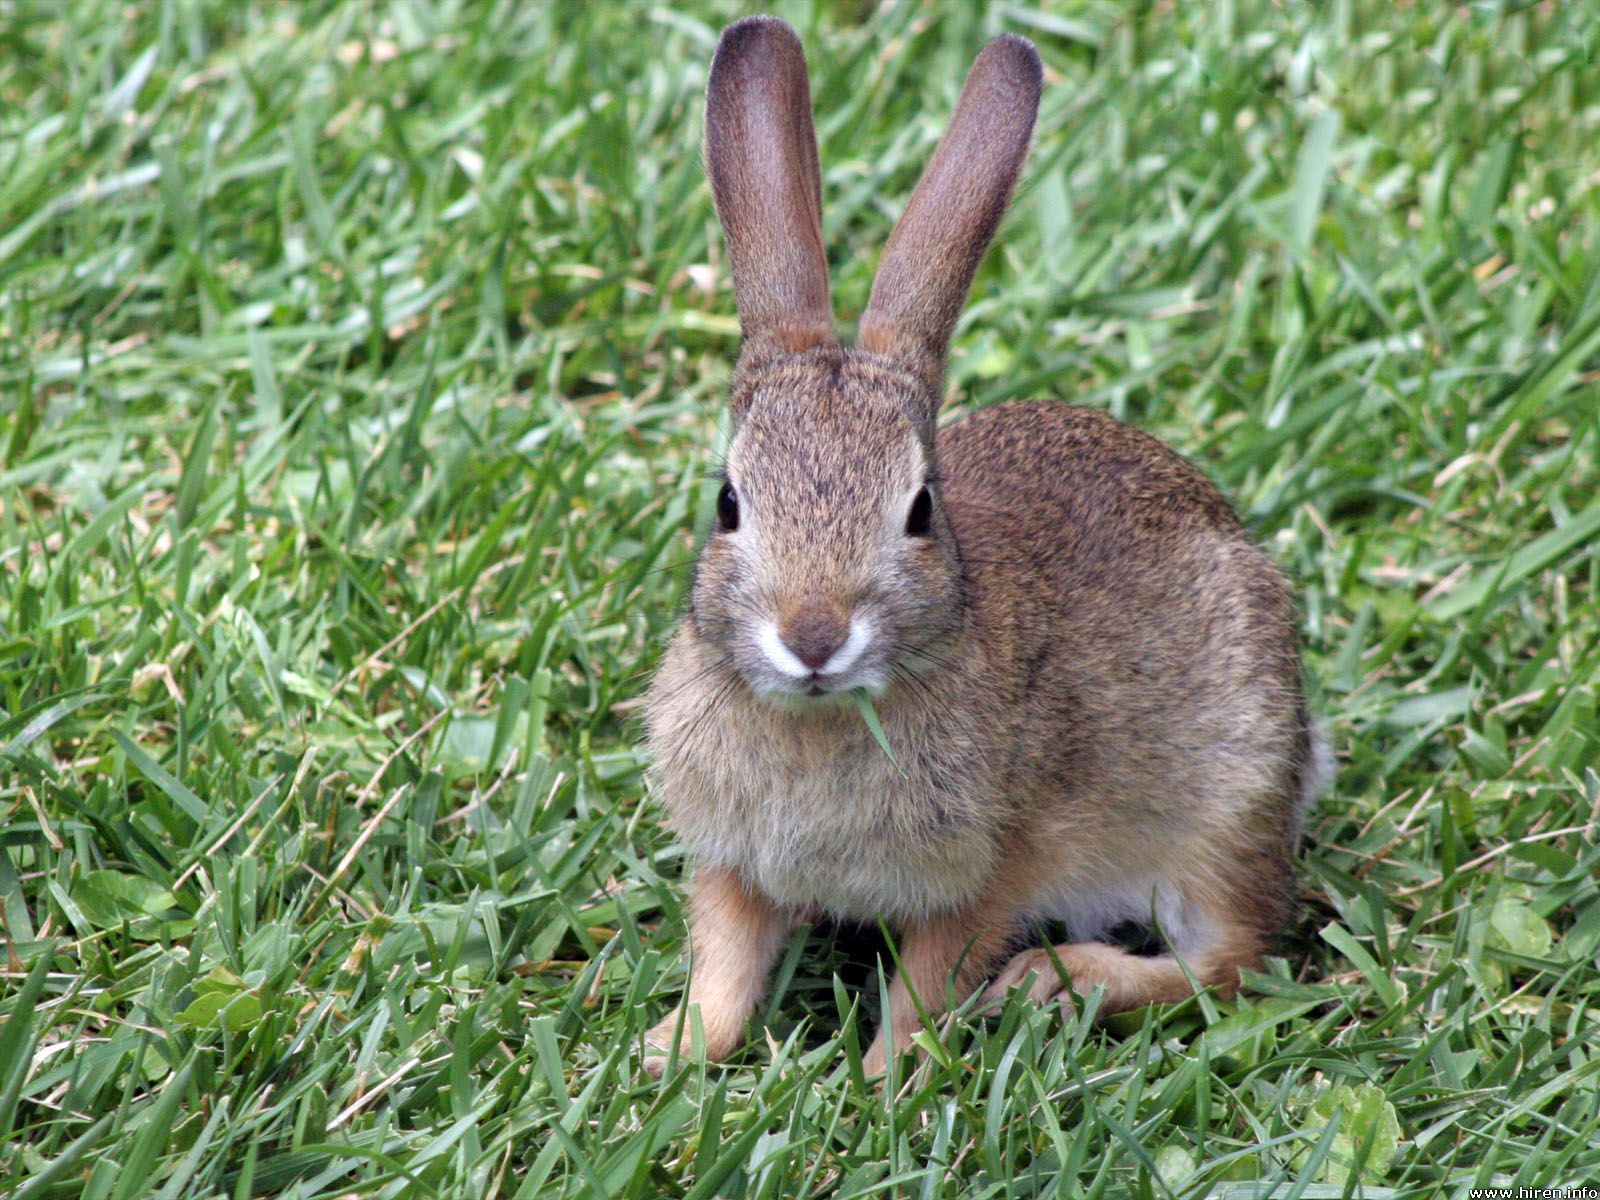 bunny-rabbit